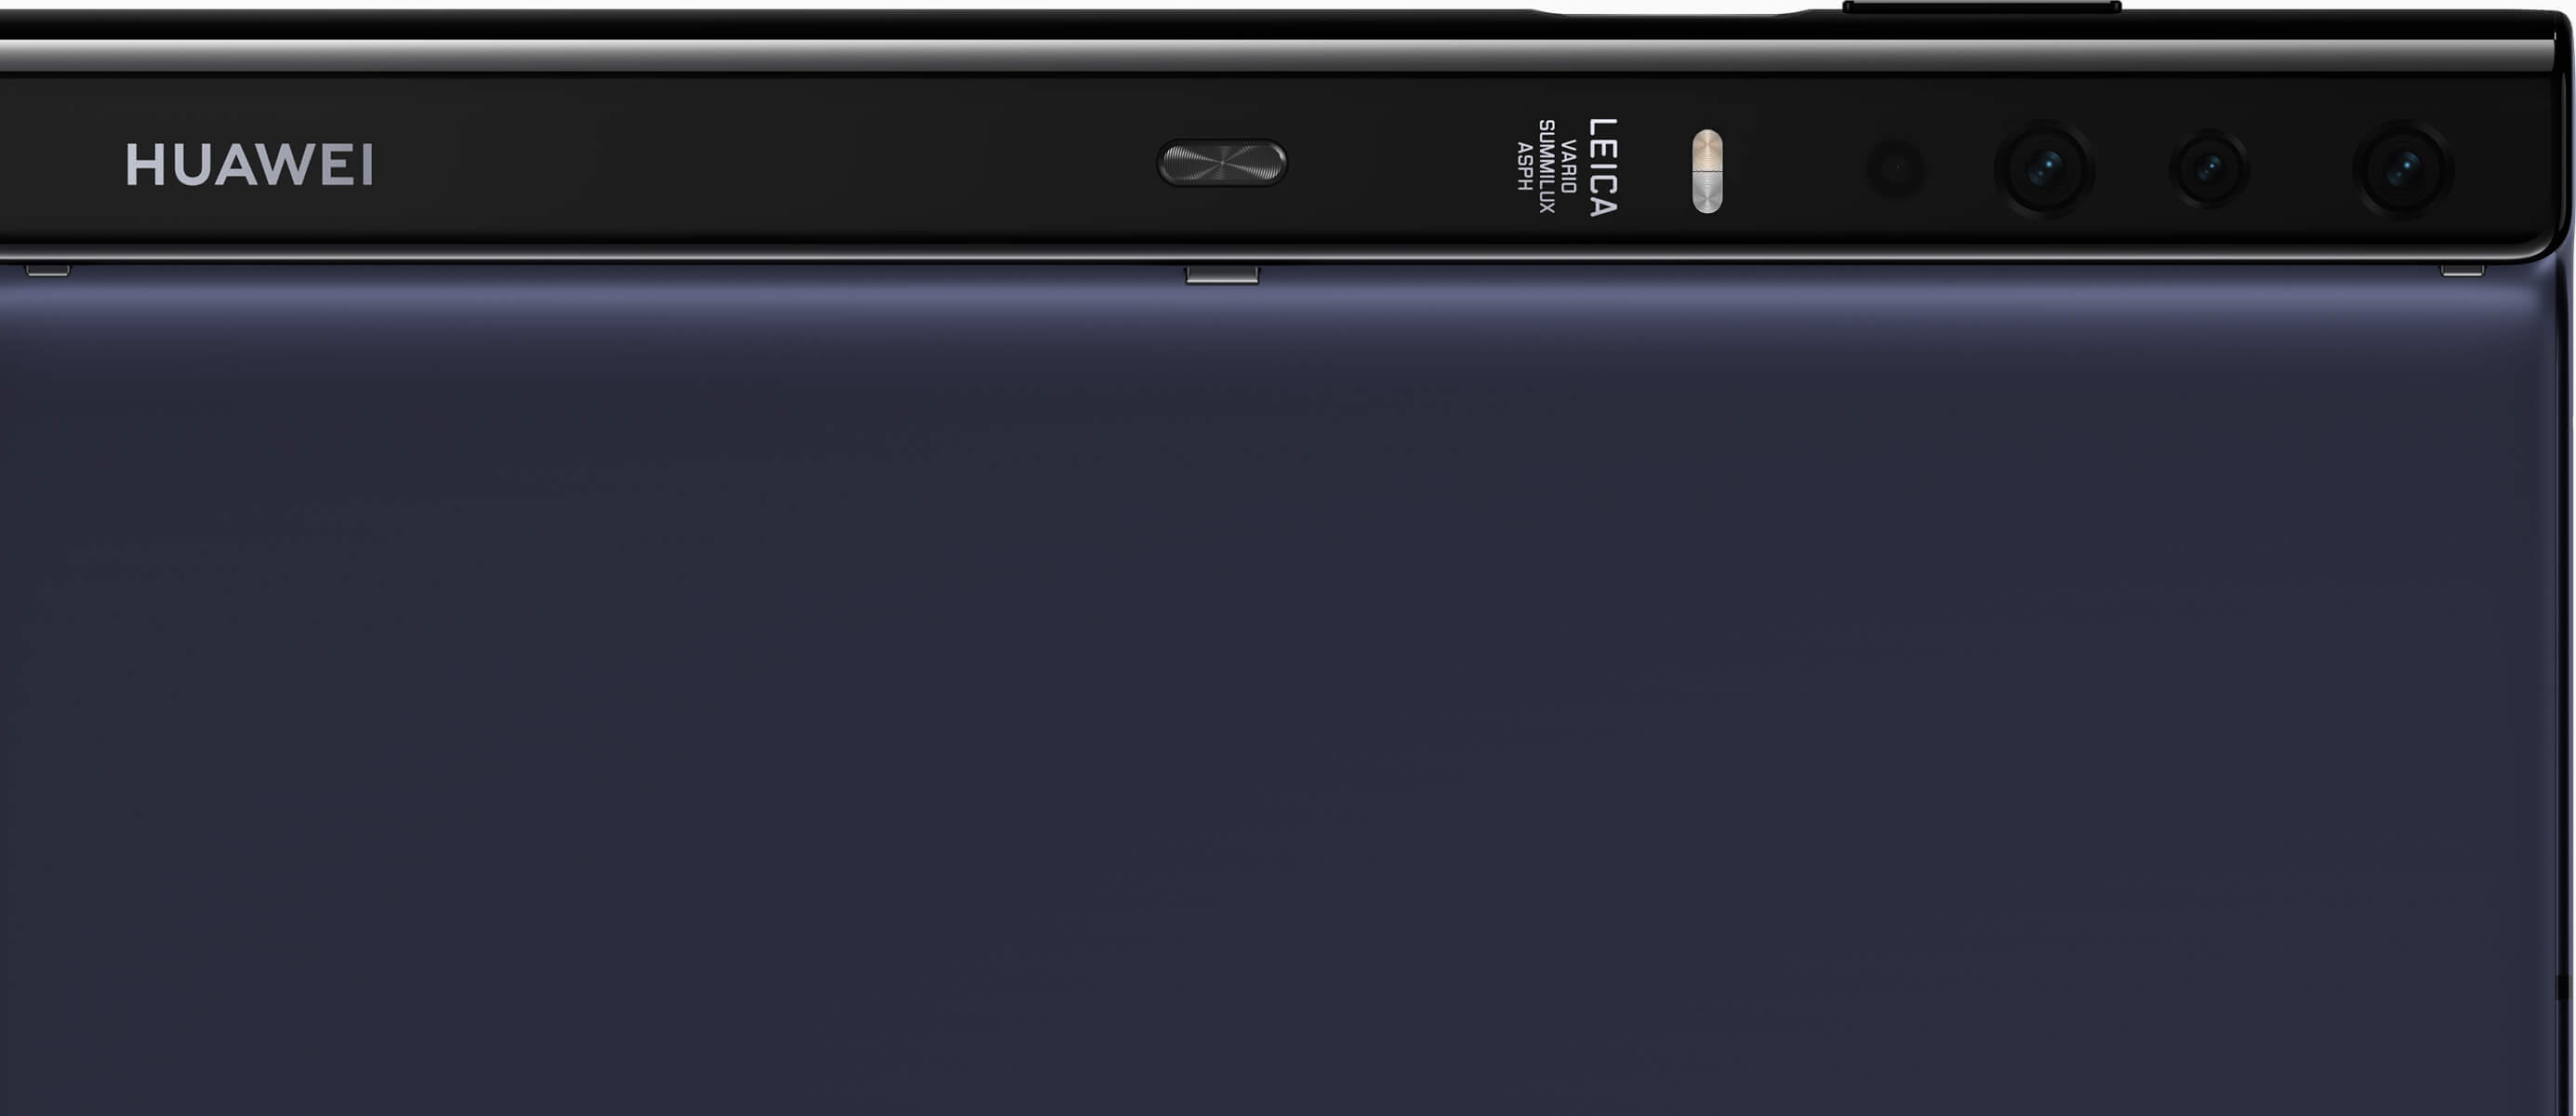 Ilyen lett a Huawei Mate X, az összehajtható kijelzős 5G okostelefon